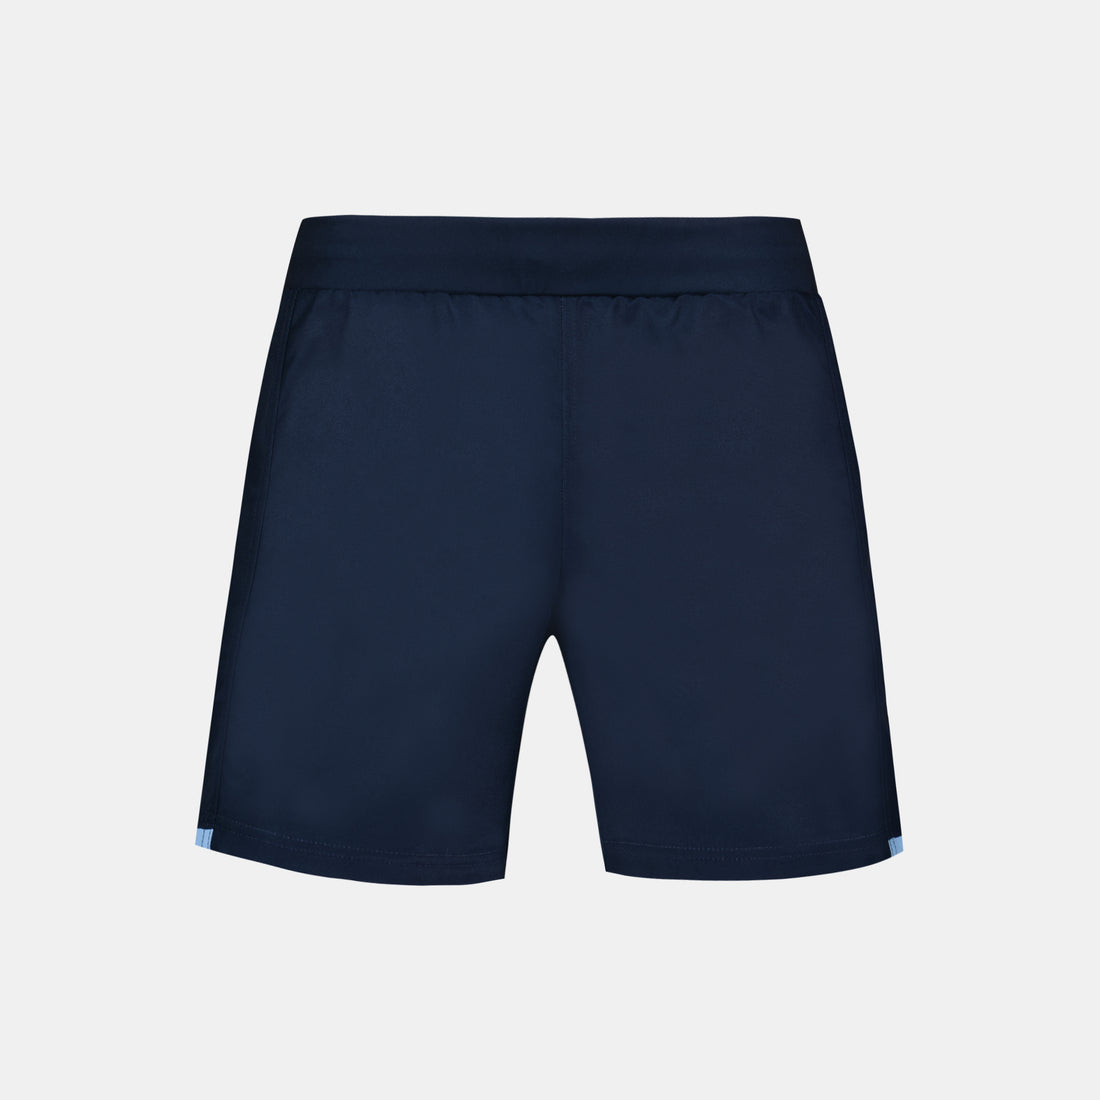 2320309-AB REPLICA Short M blue navy  | Shorts für Herren